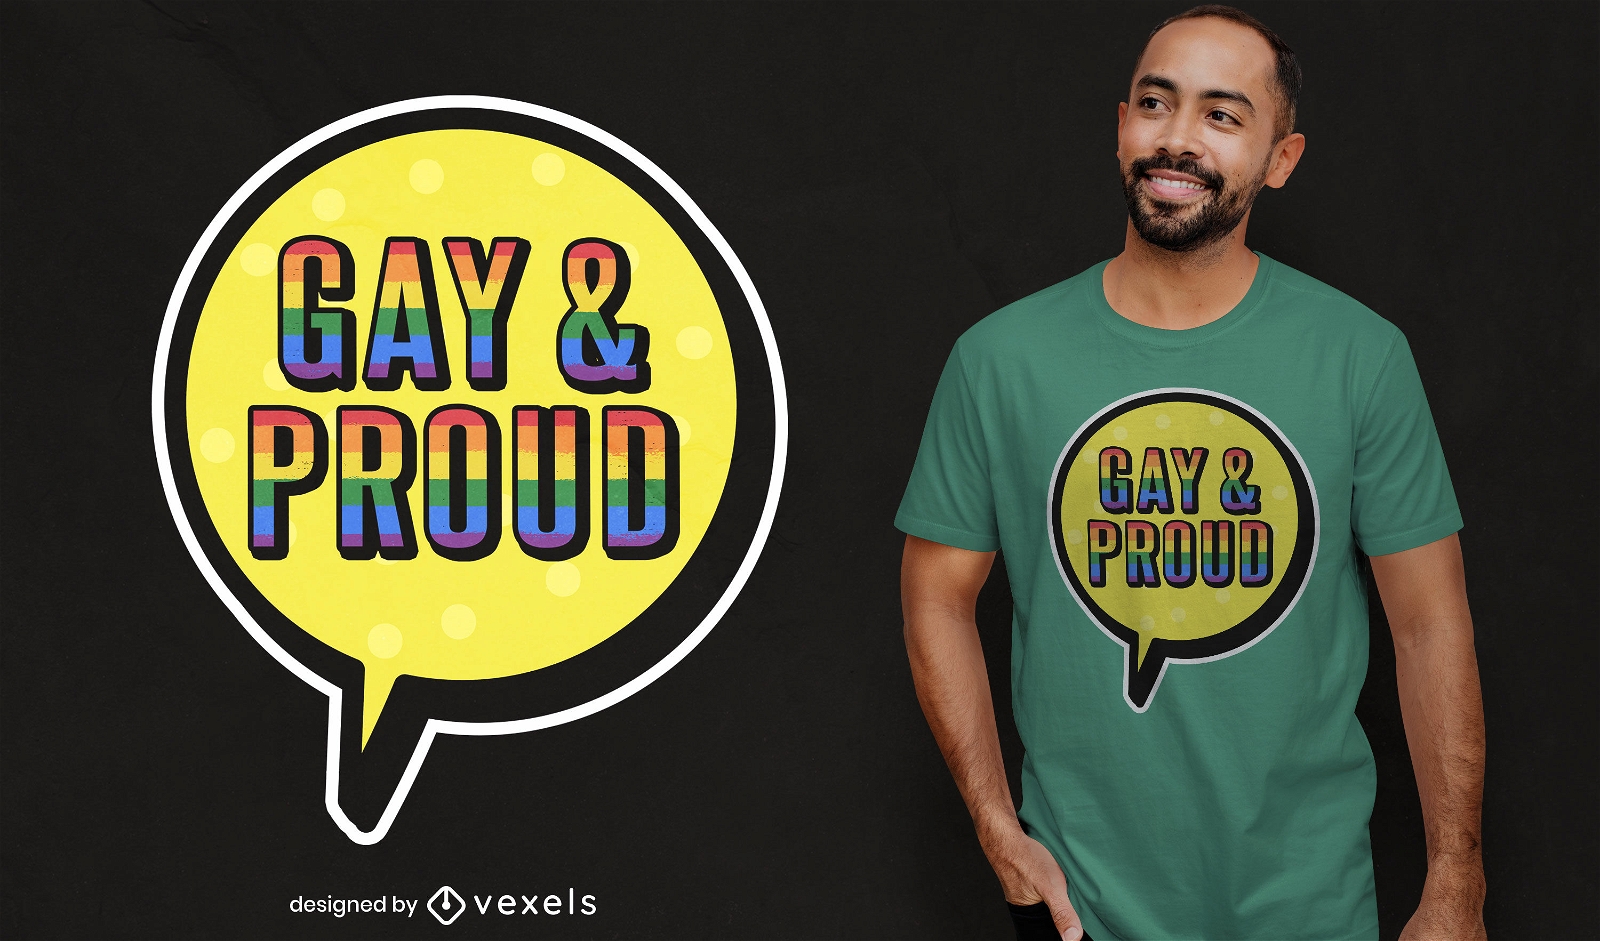 Dise?o de camiseta gay y orgulloso.